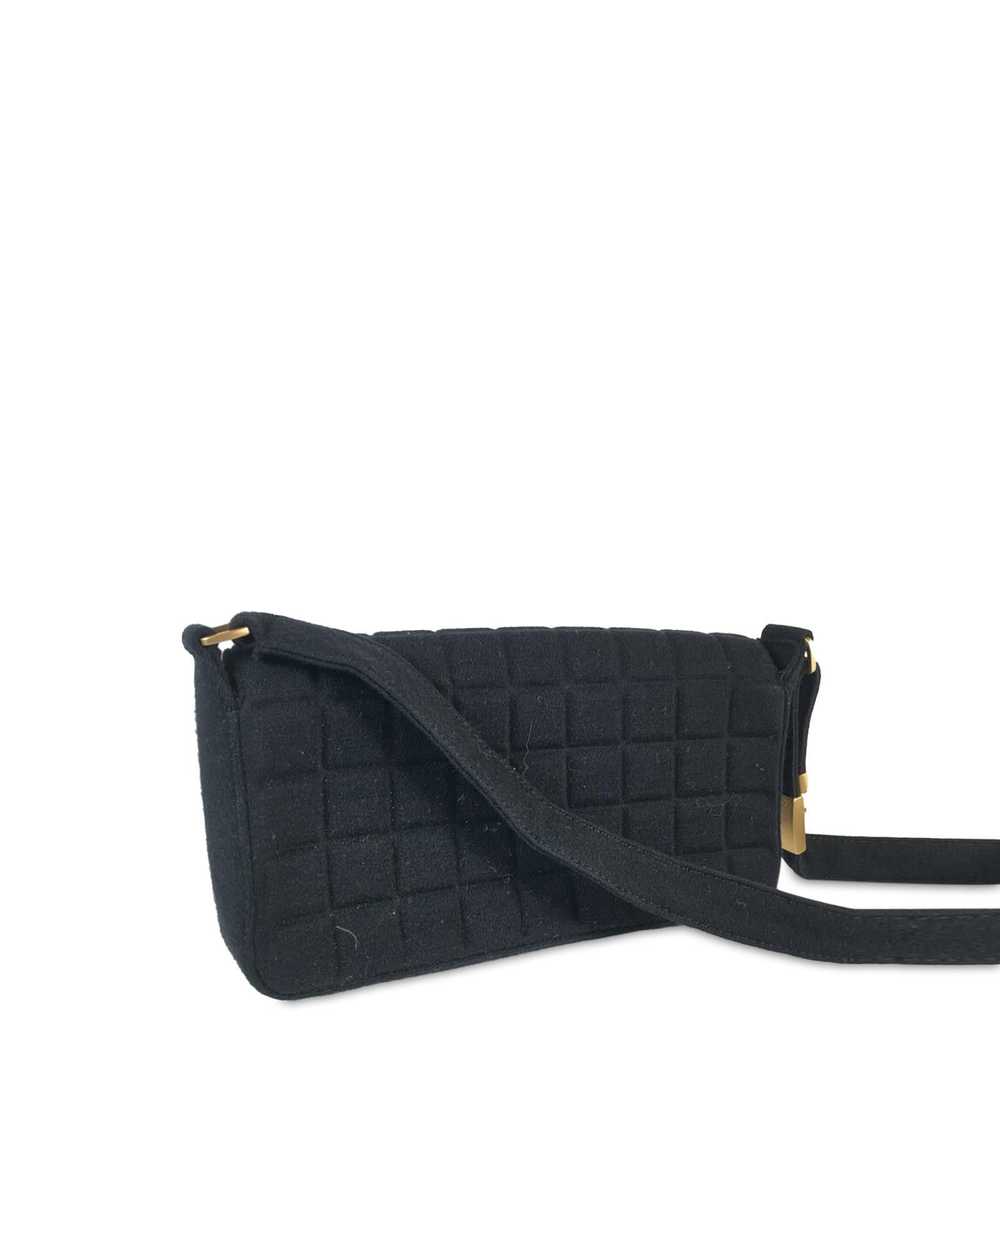 Chanel Chocolate Bar Flap Shoulder Bag - image 3